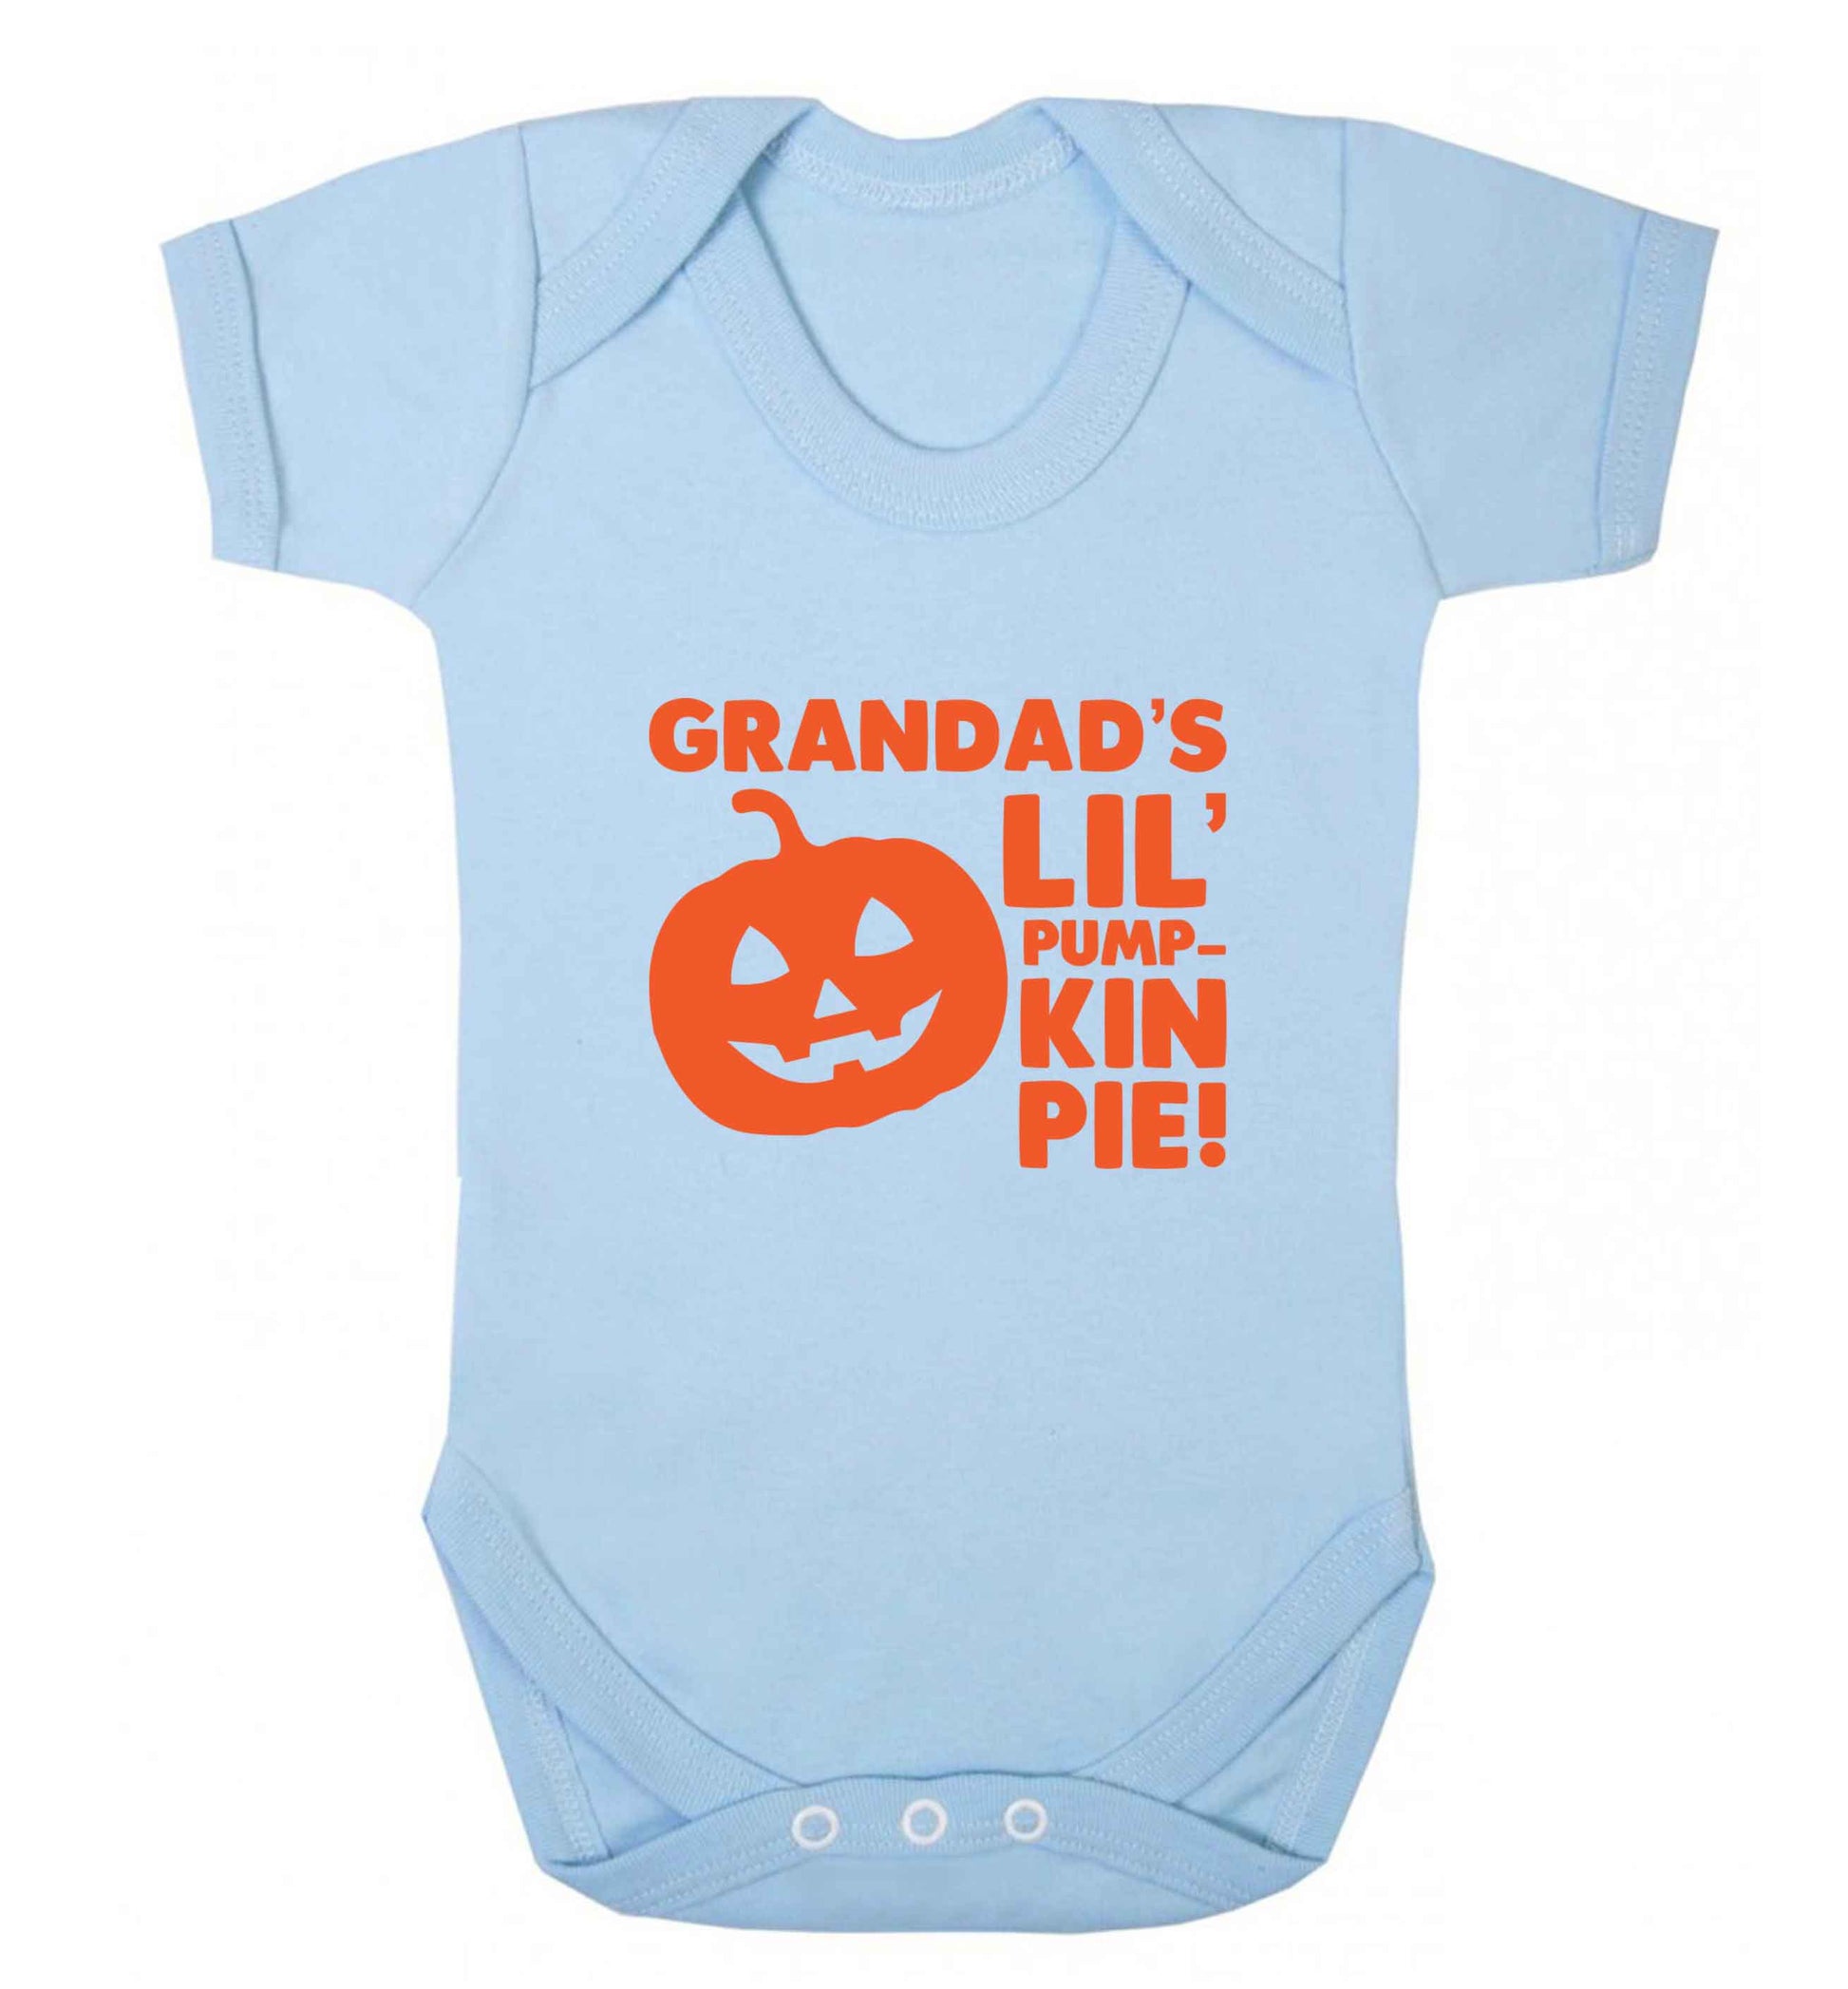 Daddy's lil' pumpkin pie baby vest pale blue 18-24 months